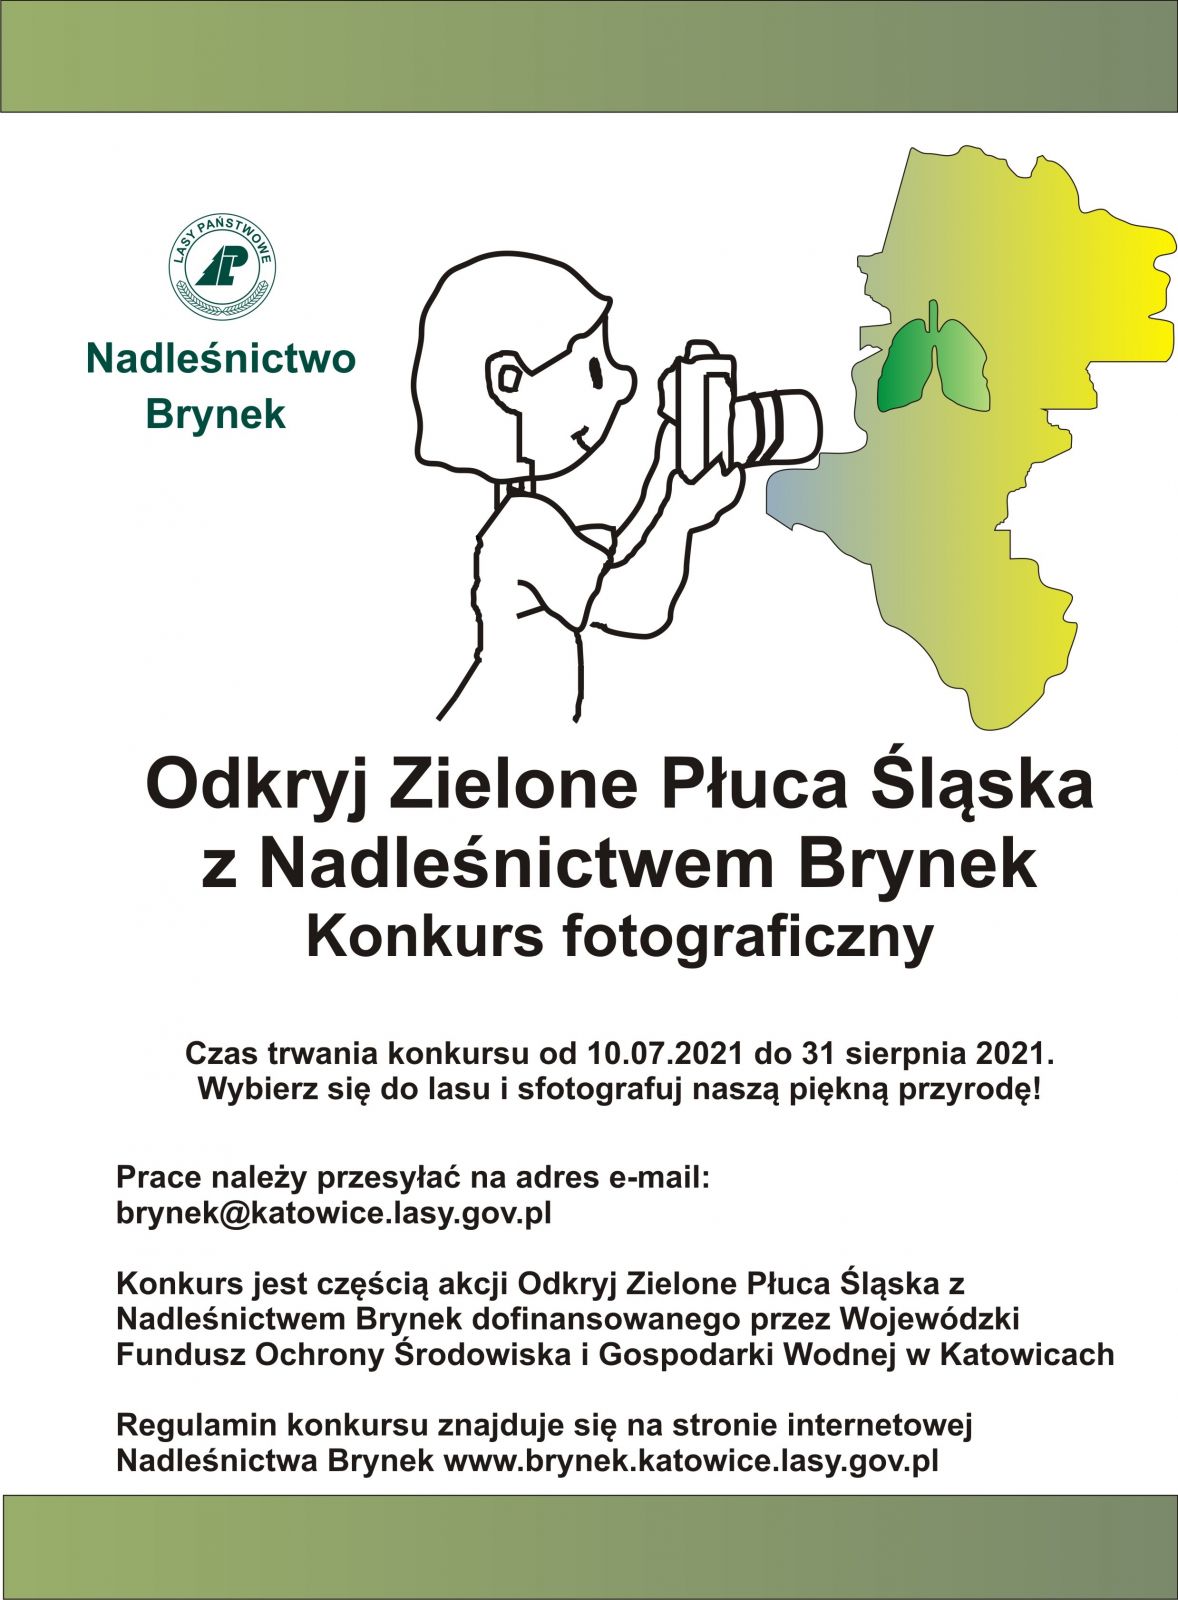 Odkryj Zielone Płuca Śląska z Nadleśnictwem Brynek